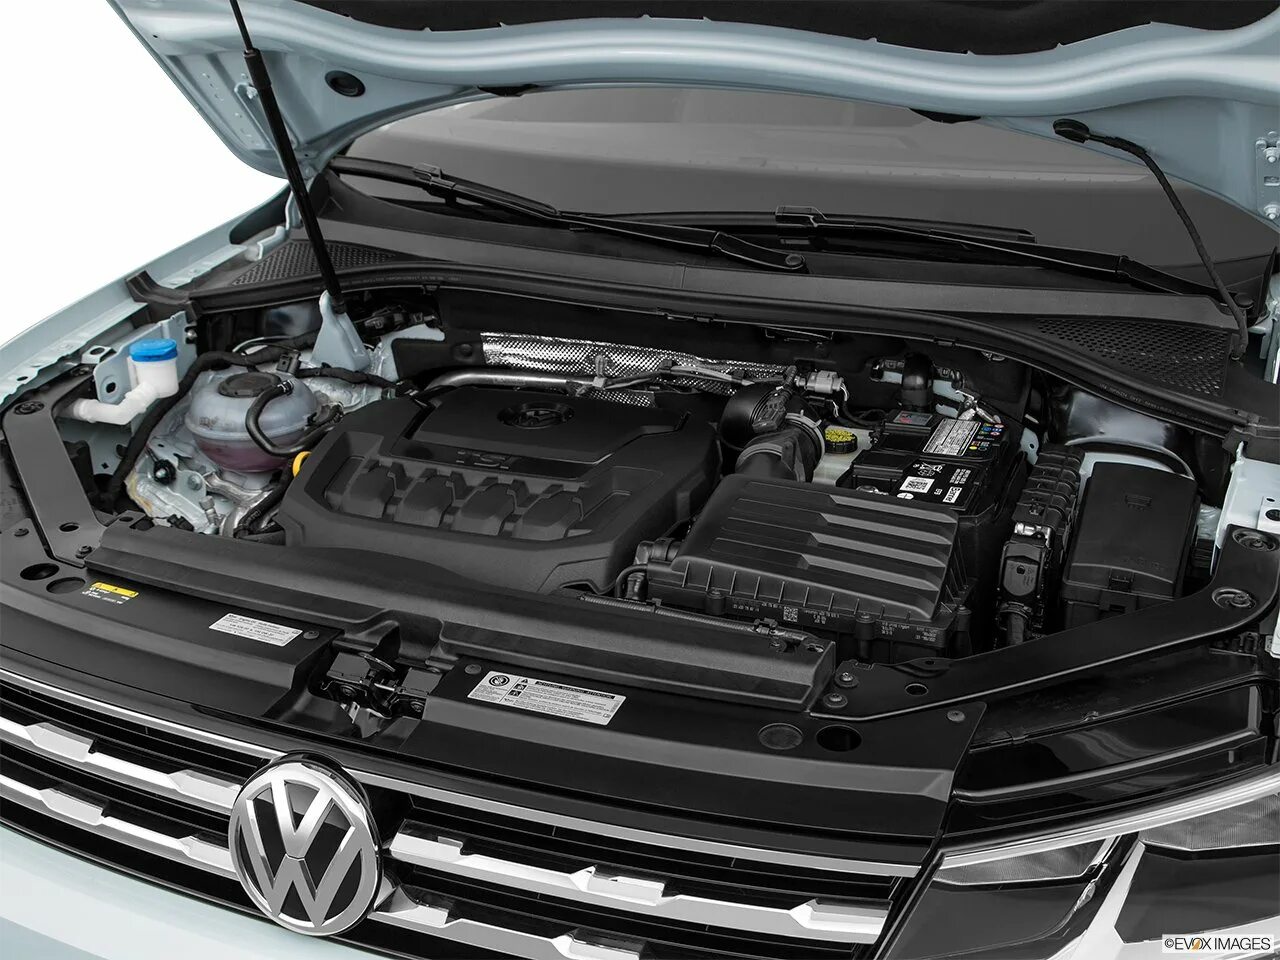 Моторный отсек Volkswagen Tiguan. Volkswagen Tiguan, 2018 под капотом. Tiguan 2017 под капотом. Tiguan 1.4 под капотом.